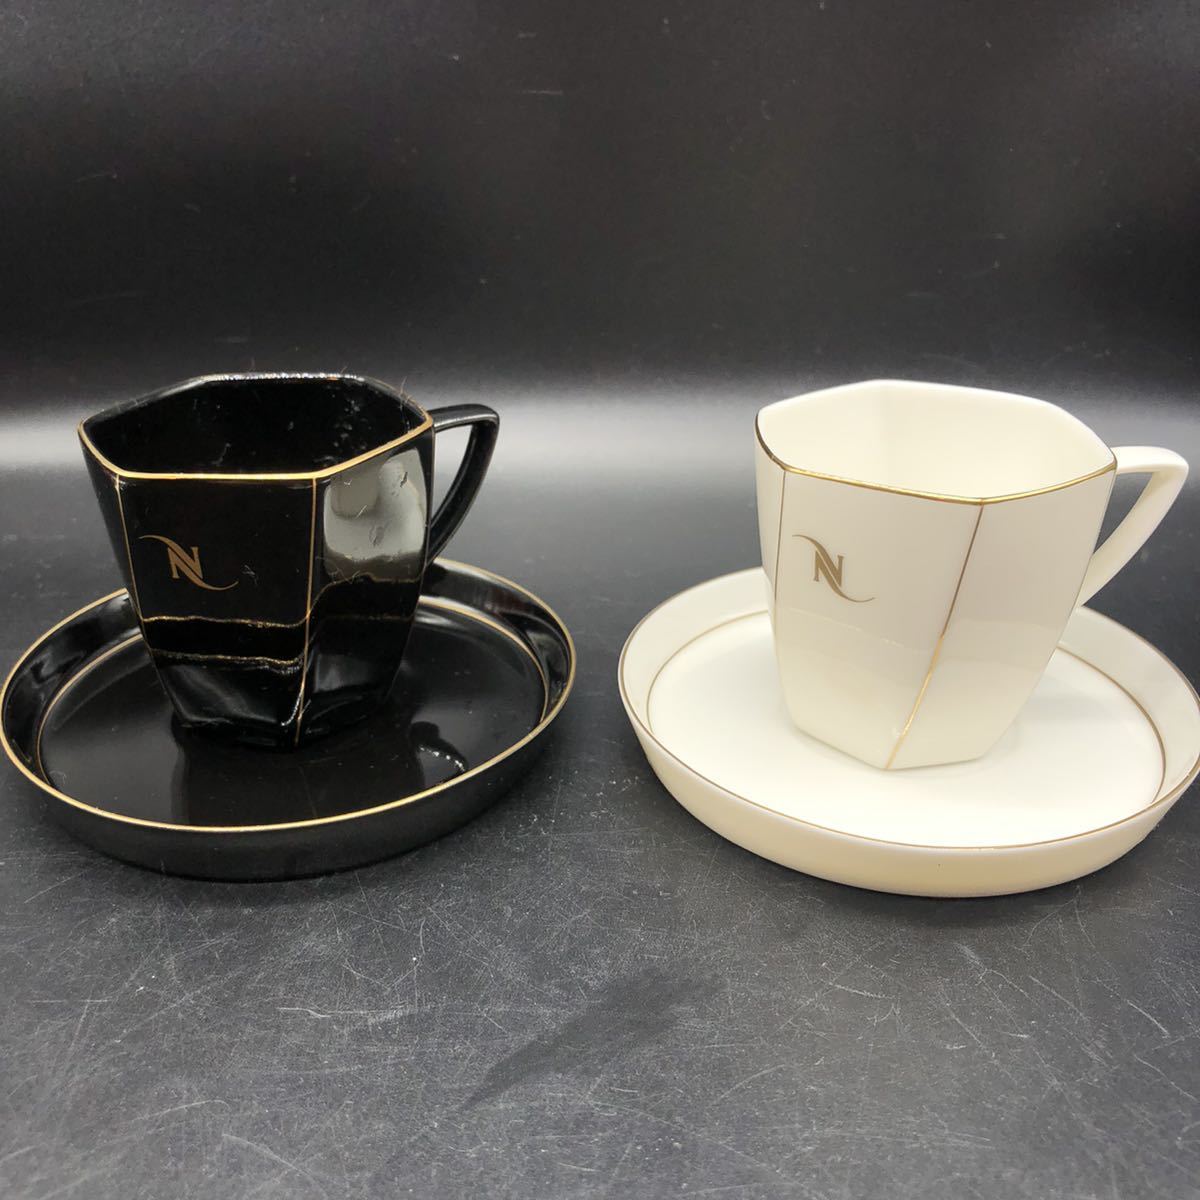 valentino garavani カップ&ソーサー 2客セット 陶磁器 食器 マグカップ コーヒーカップ ティーカップ O23-10の画像1